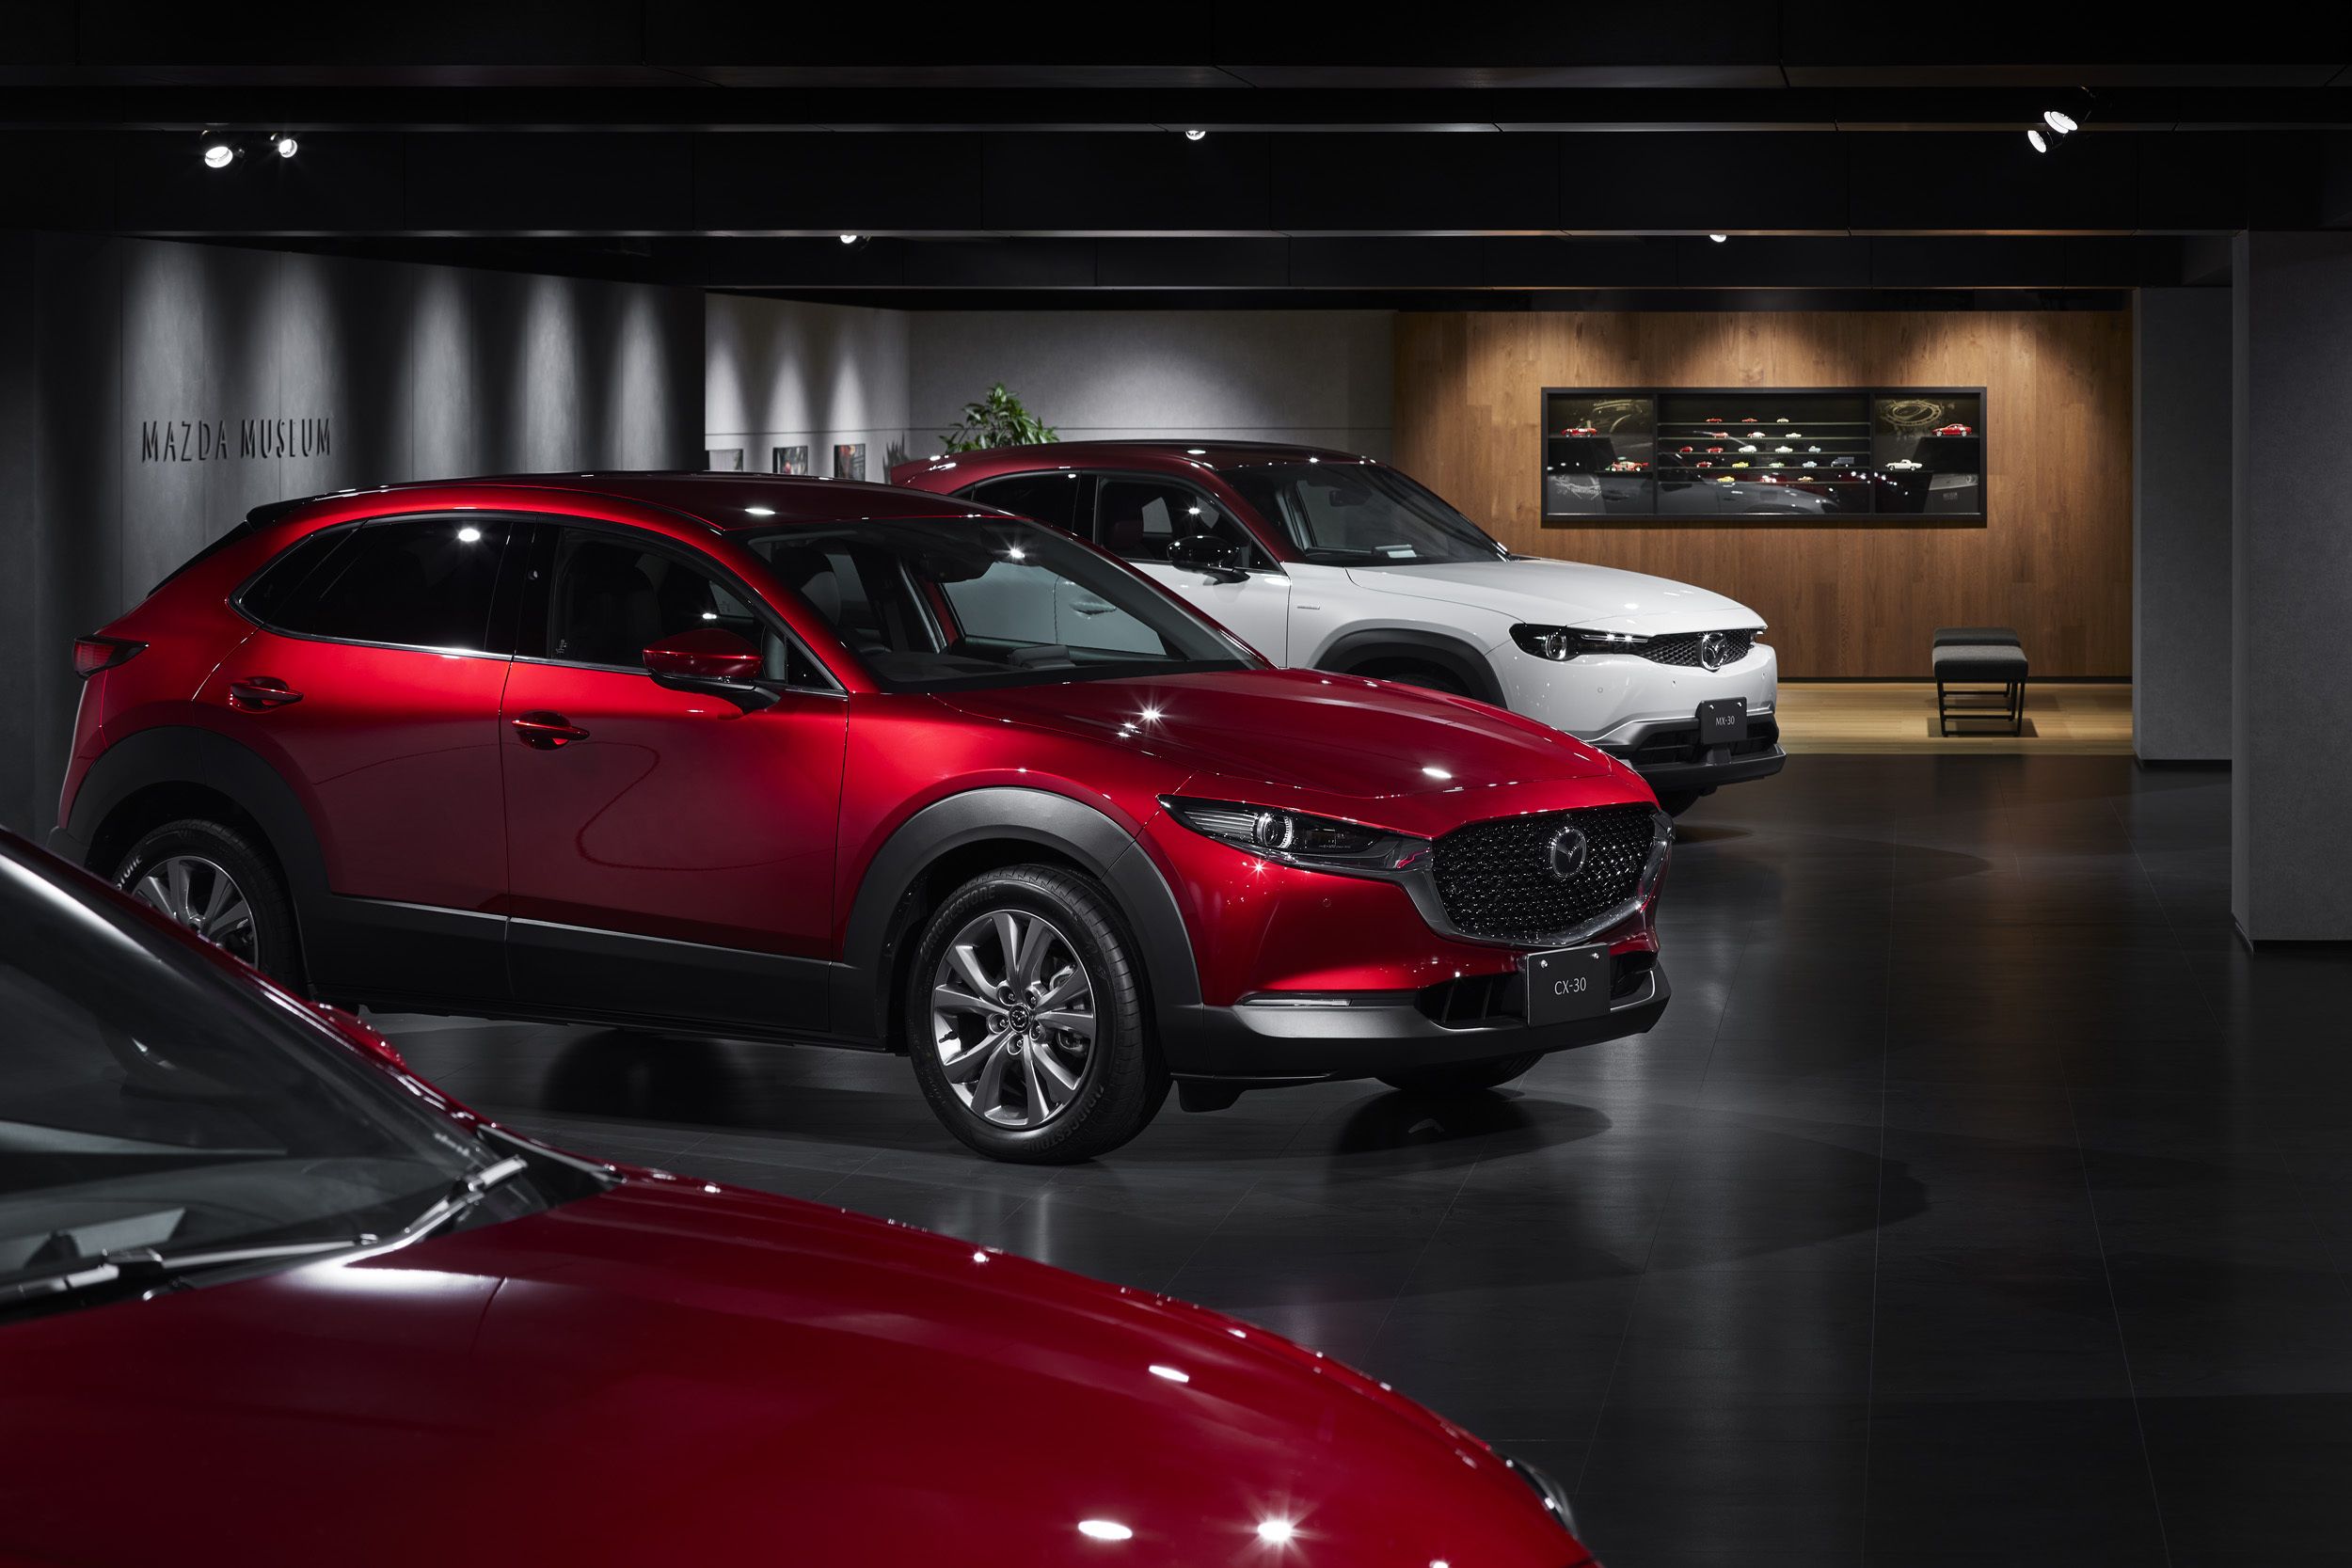 Η Mazda μας υποδέχεται στο ανακαινισμένο της Μουσείο